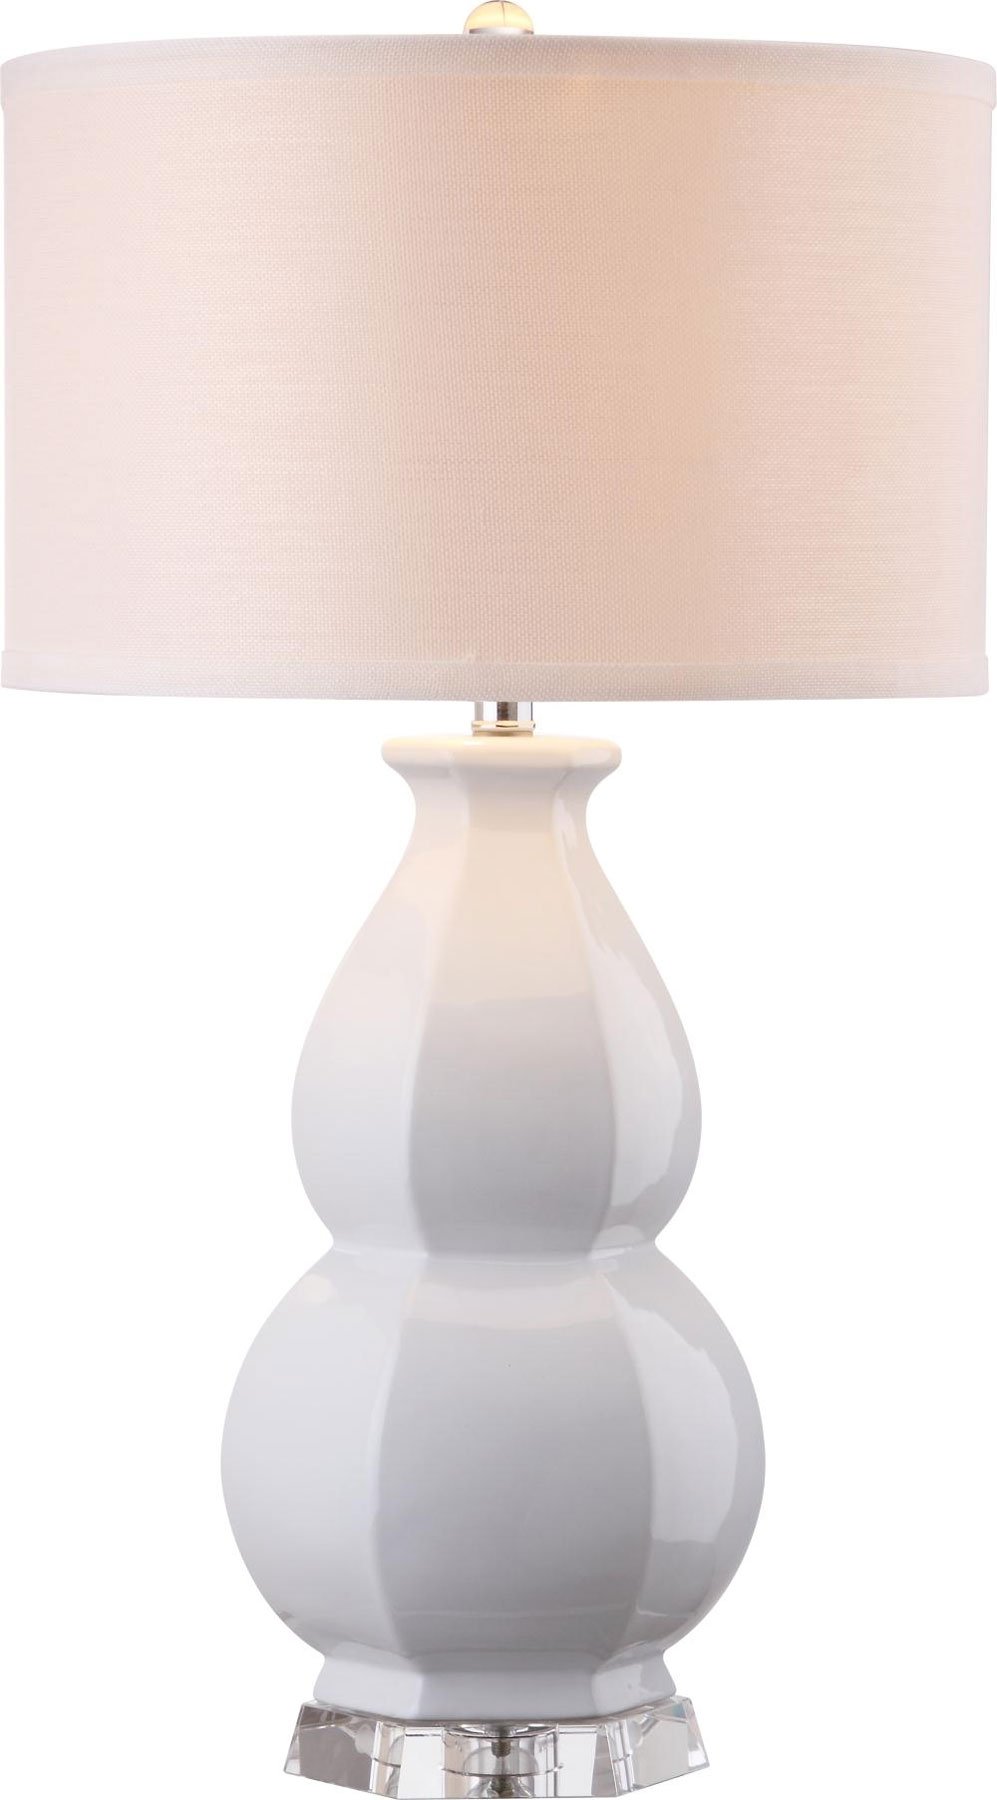 Juniper Table Lamp, White - Image 1